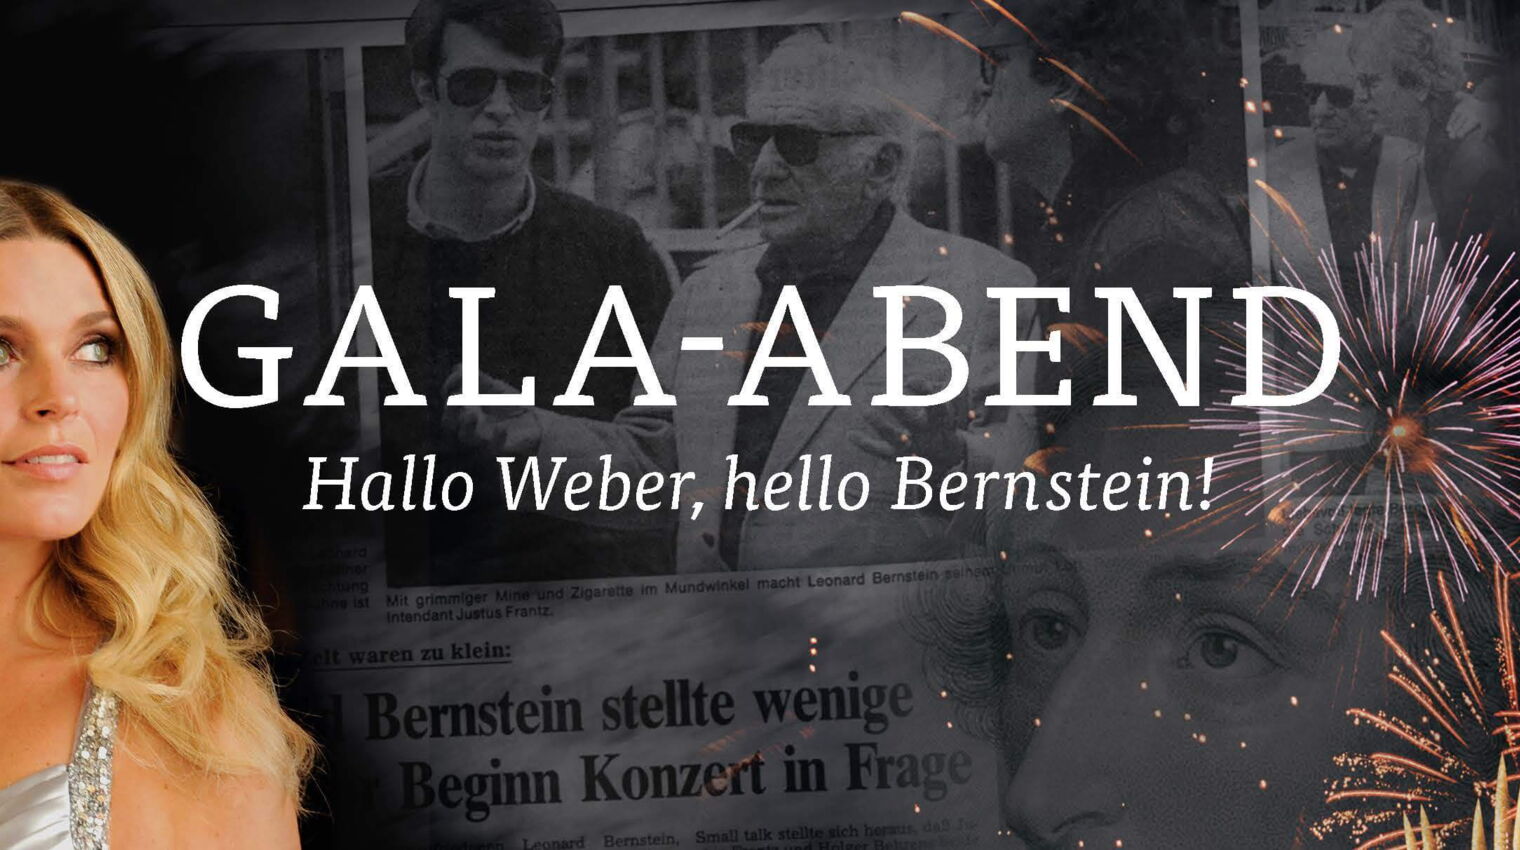 Gala-Abend – Hallo Weber, hello Bernstein!